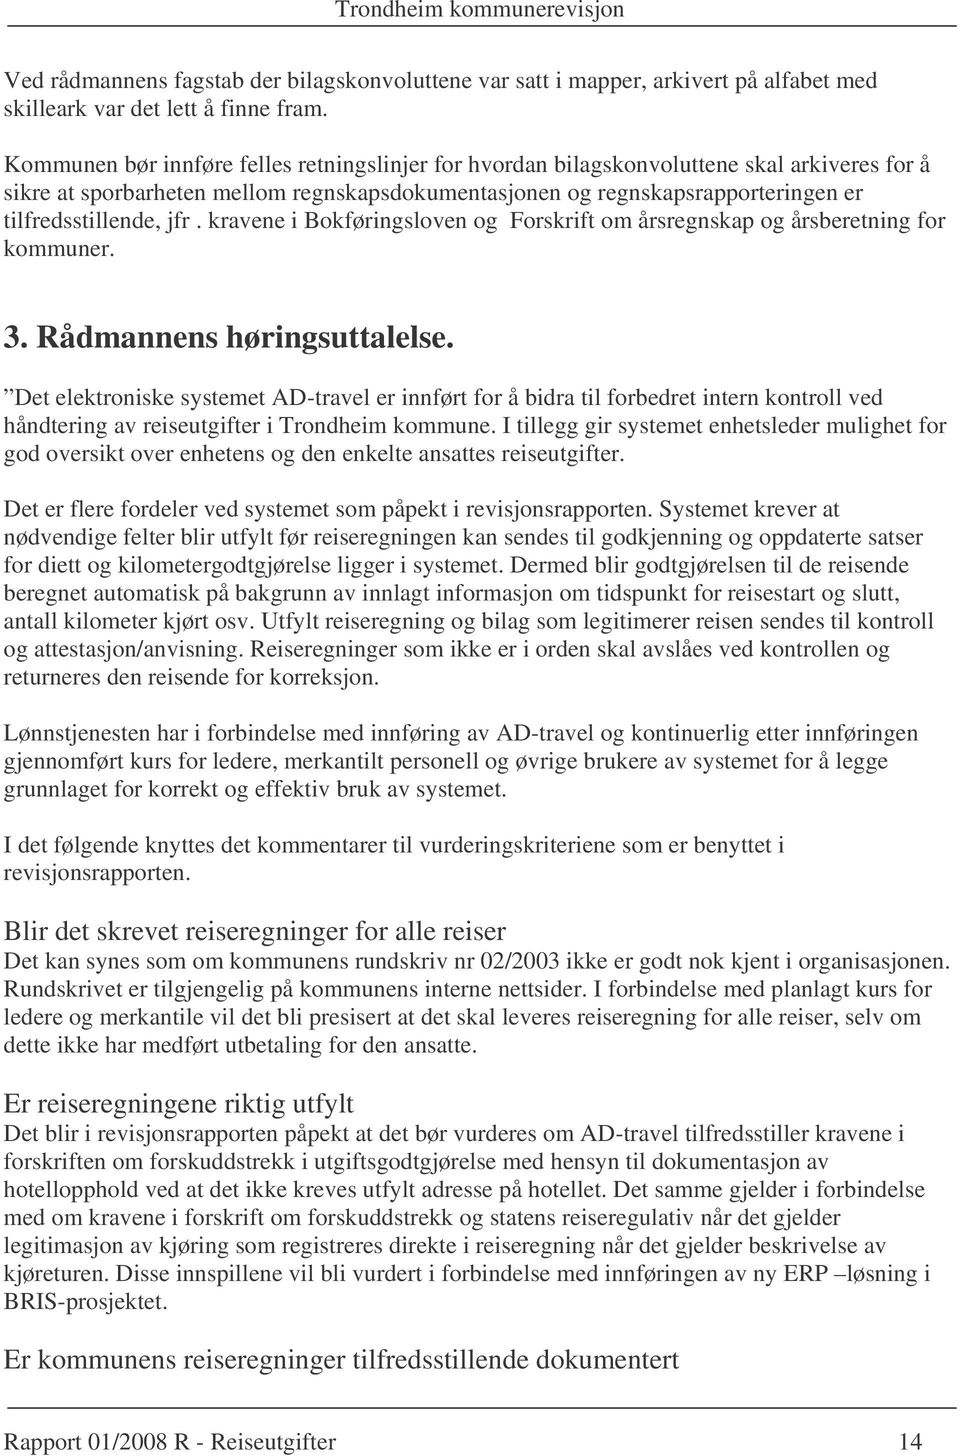 jfr. kravene i Bokføringsloven og Forskrift om årsregnskap og årsberetning for kommuner. 3. Rådmannens høringsuttalelse.